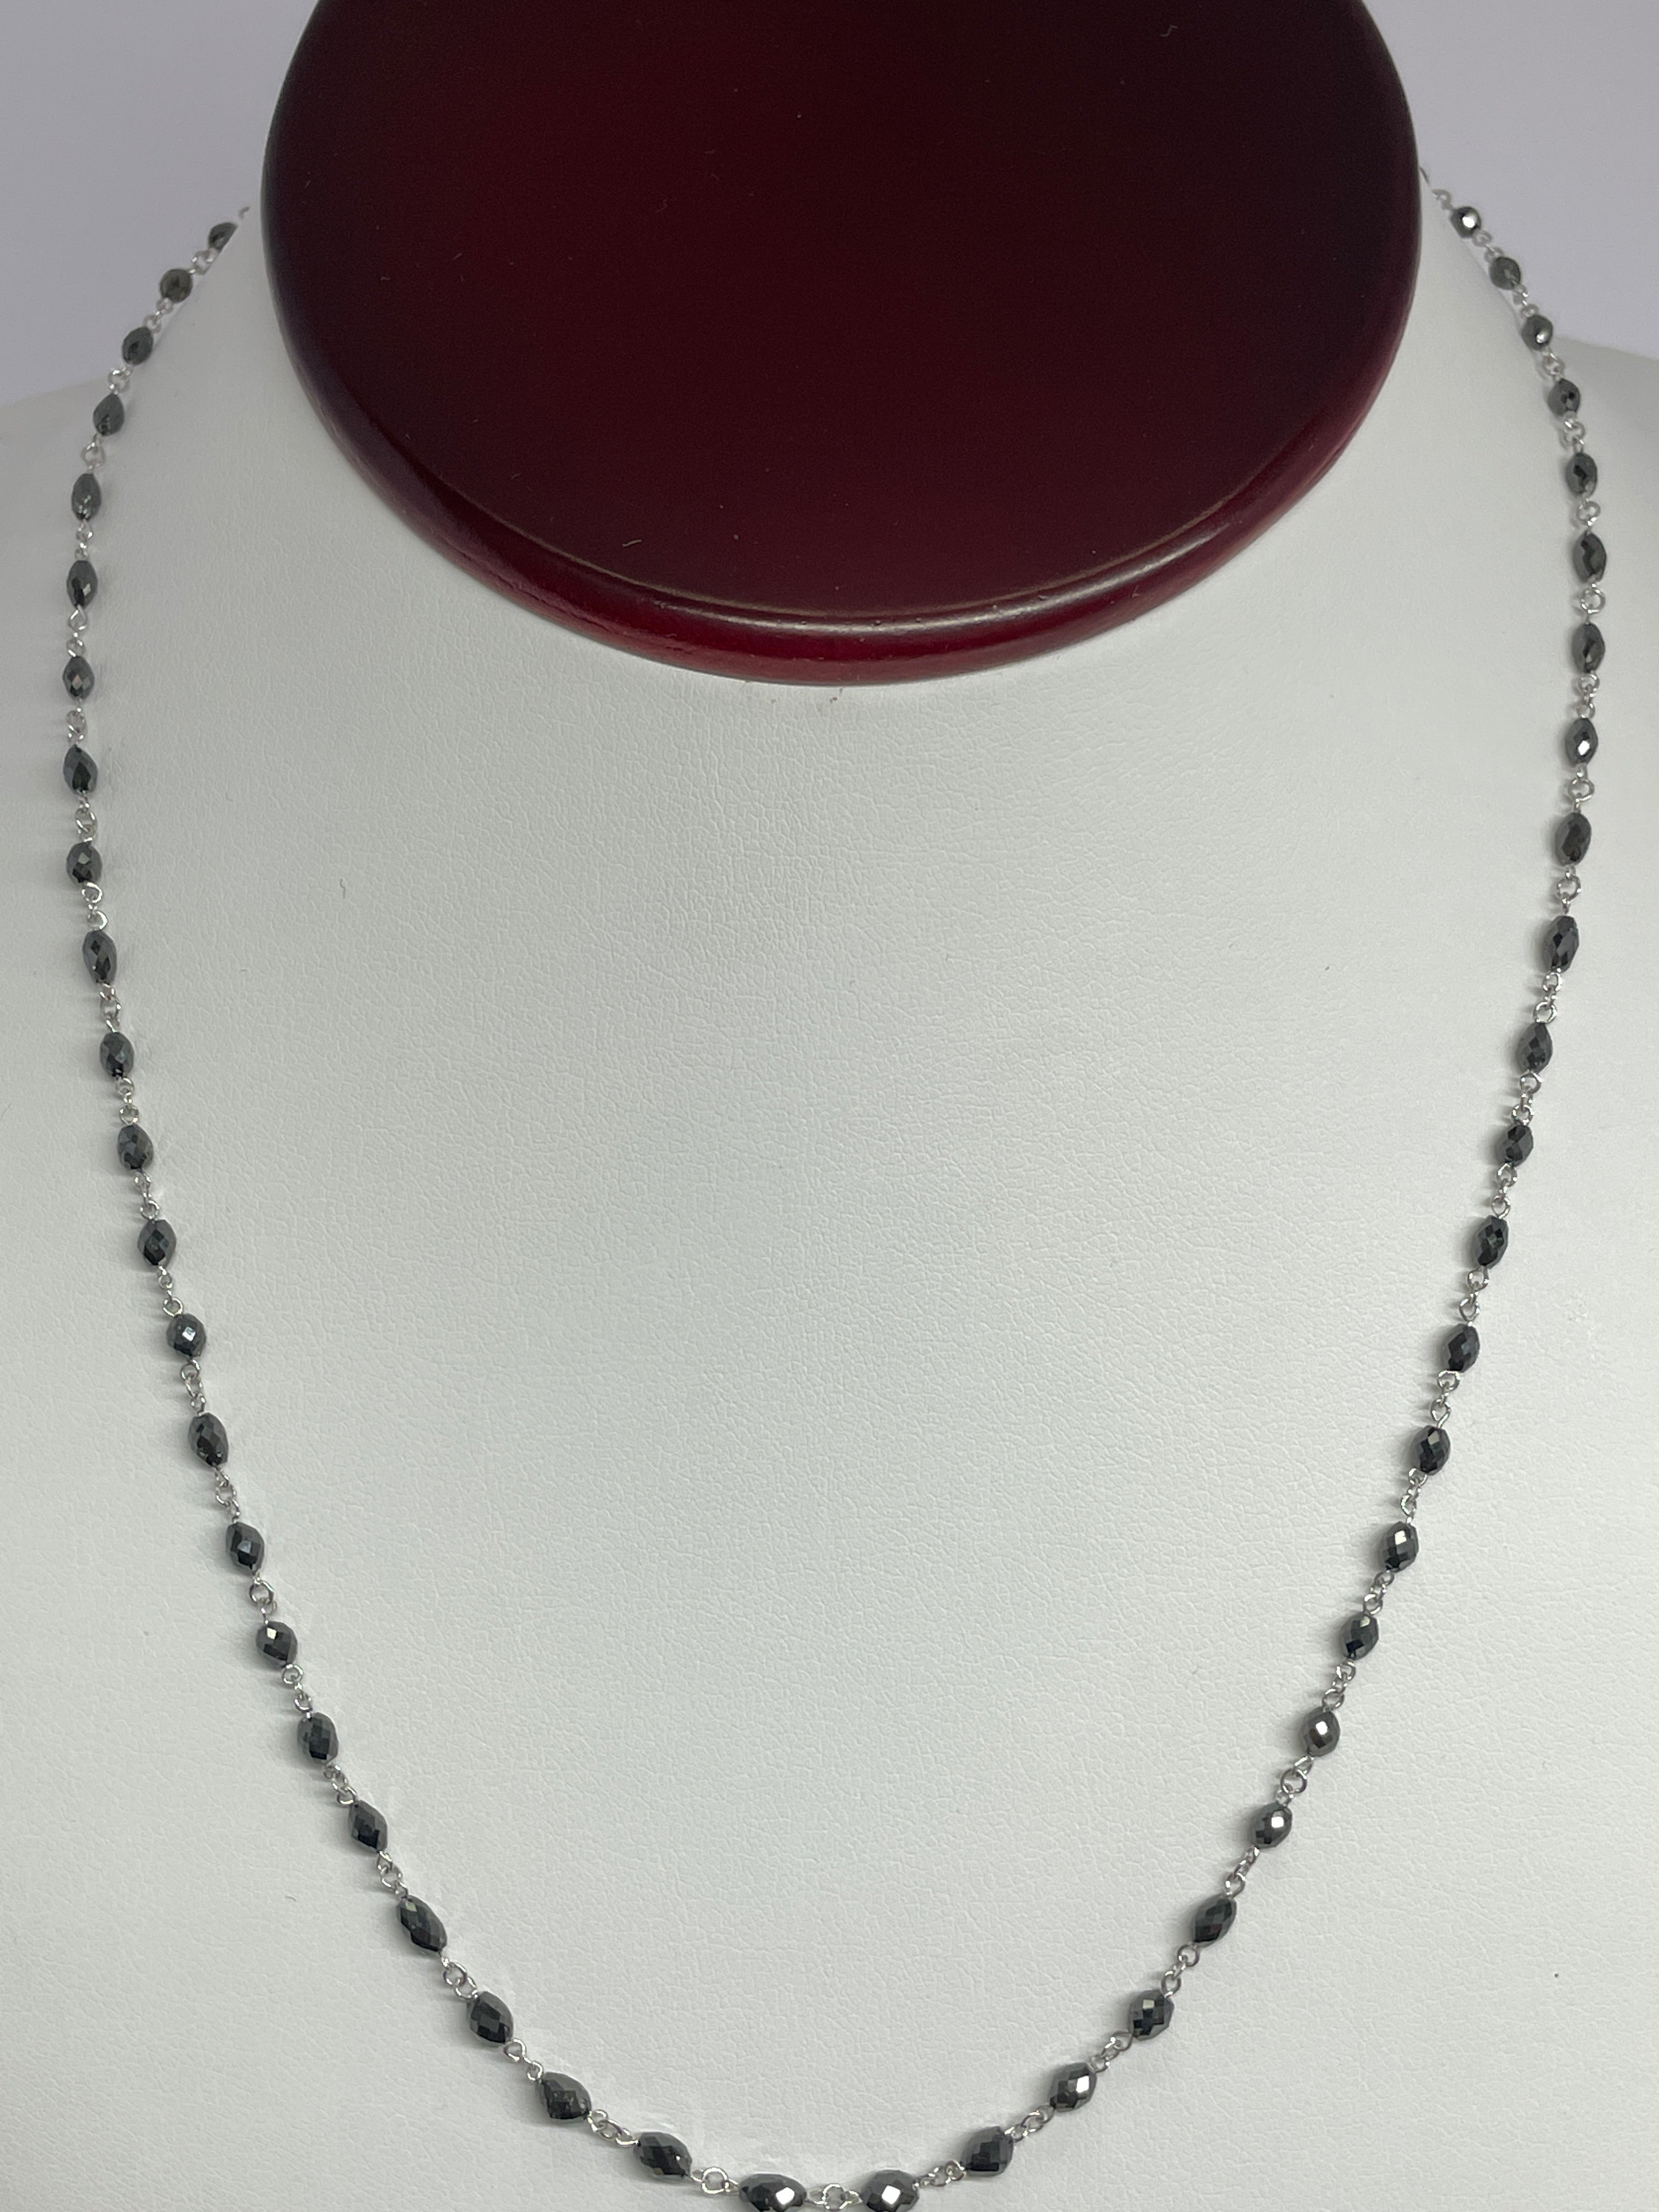 Black Diamond Oval Beads, 18K White Gold Necklace, Diamond Faceted Beads, 18" Inch Necklace, Oval Cut Beads Necklace